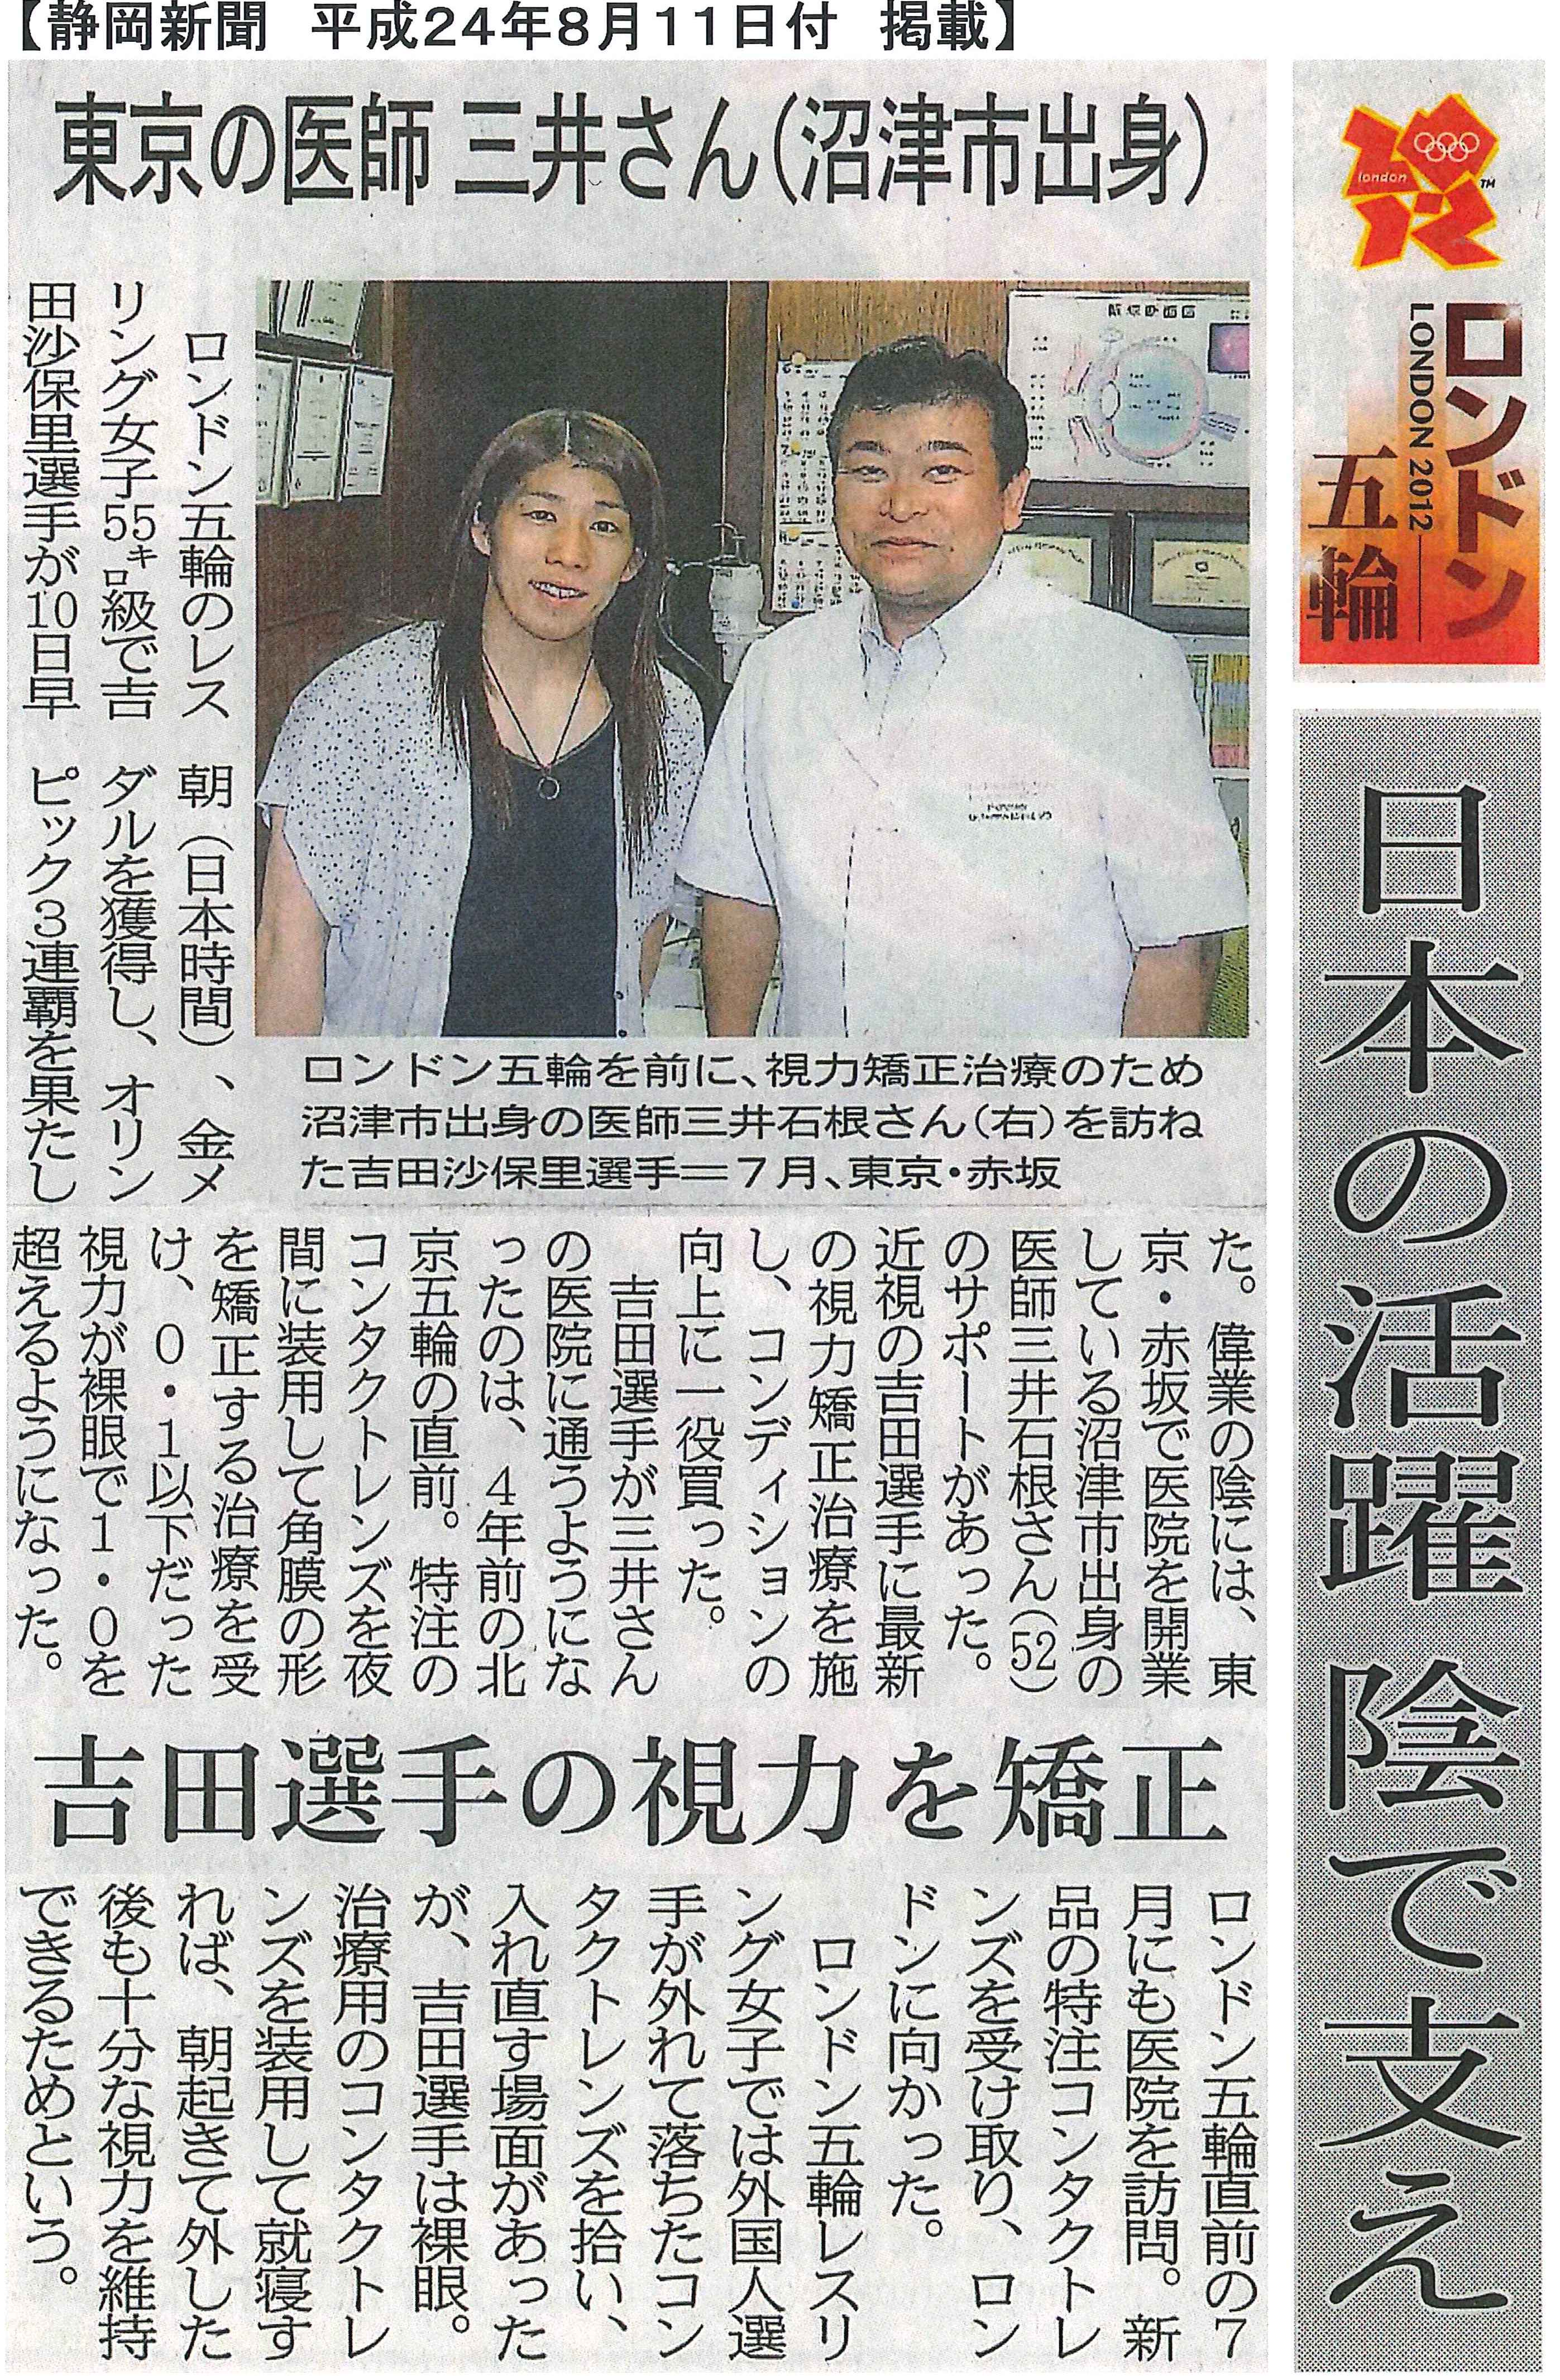 2012-8-11 静岡新聞